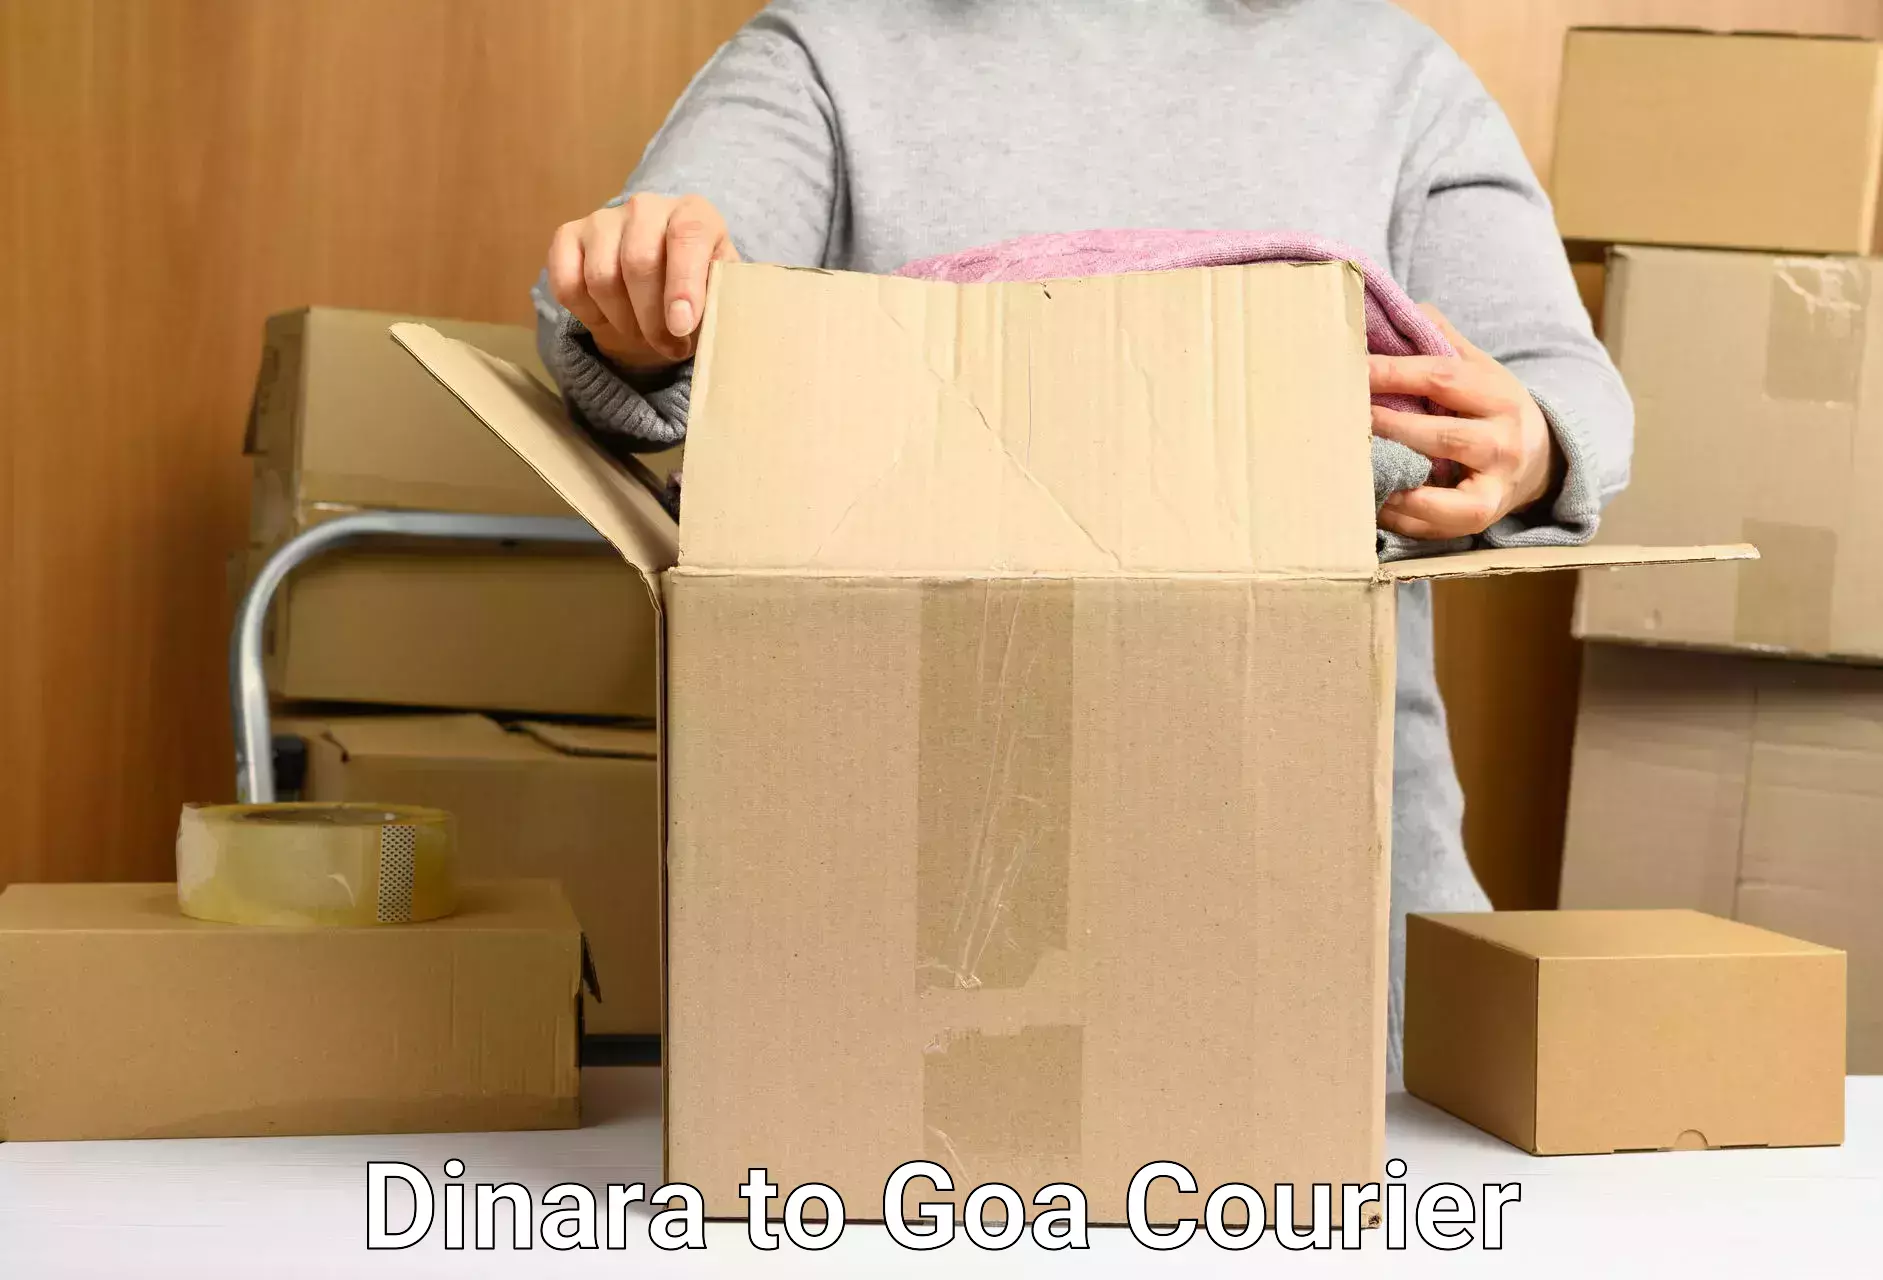 User-friendly courier app Dinara to Goa